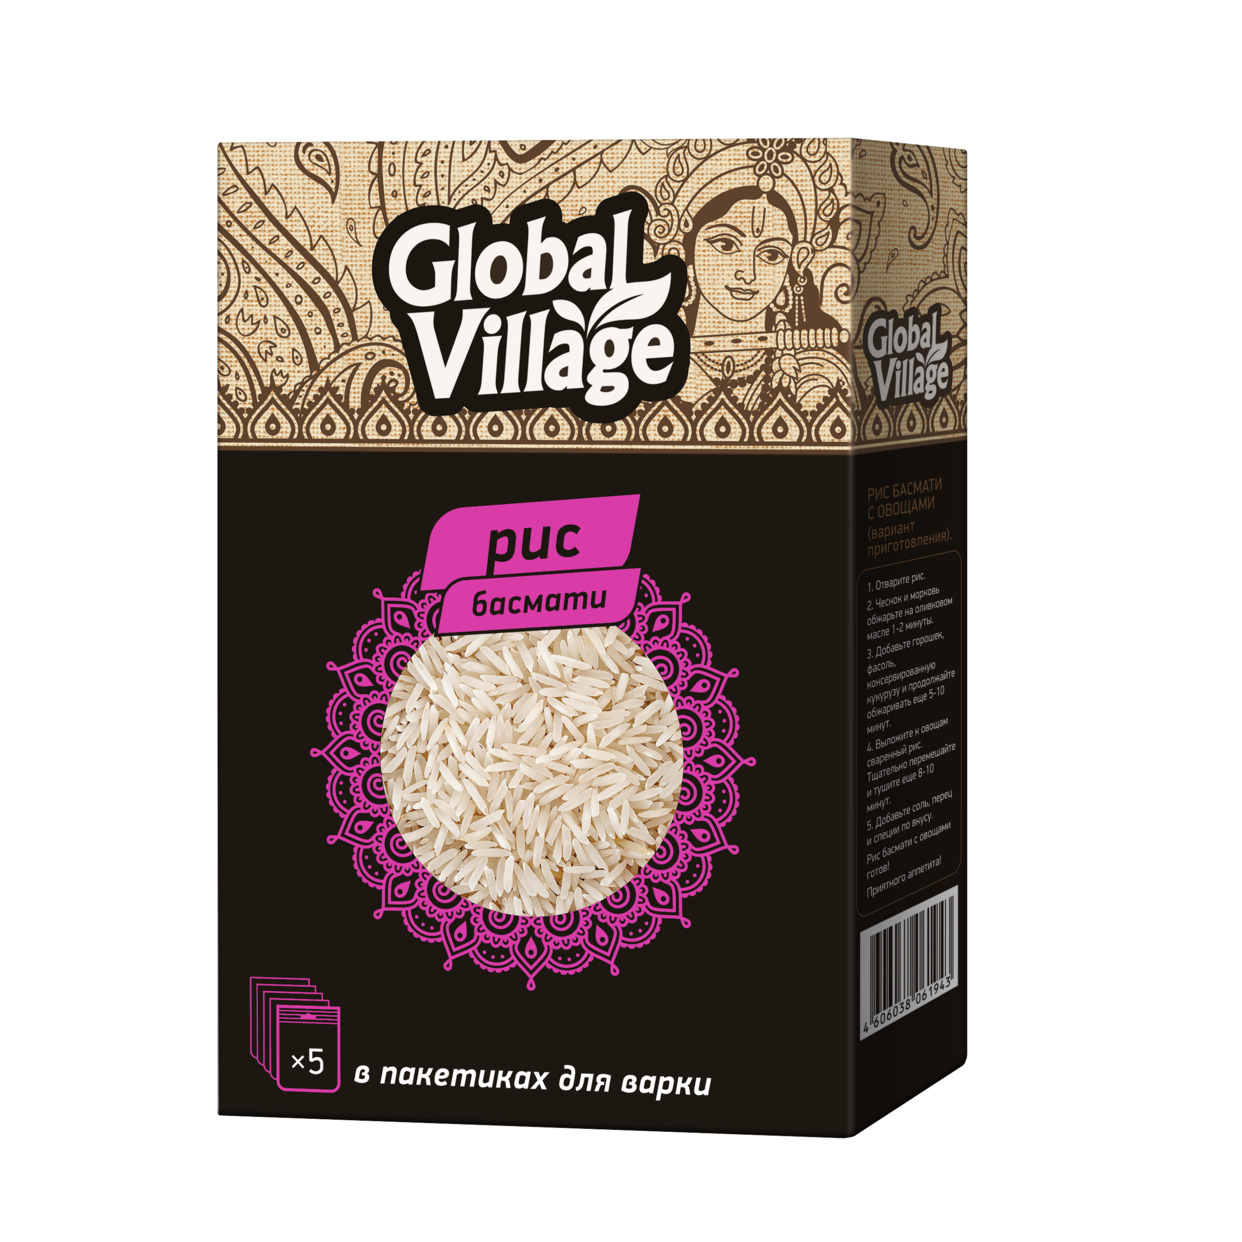 GLOBAL VILLAGE Крупа рисовая шлифованная. Рис Басмати 1 сорт 5х80г по акции в Пятерочке